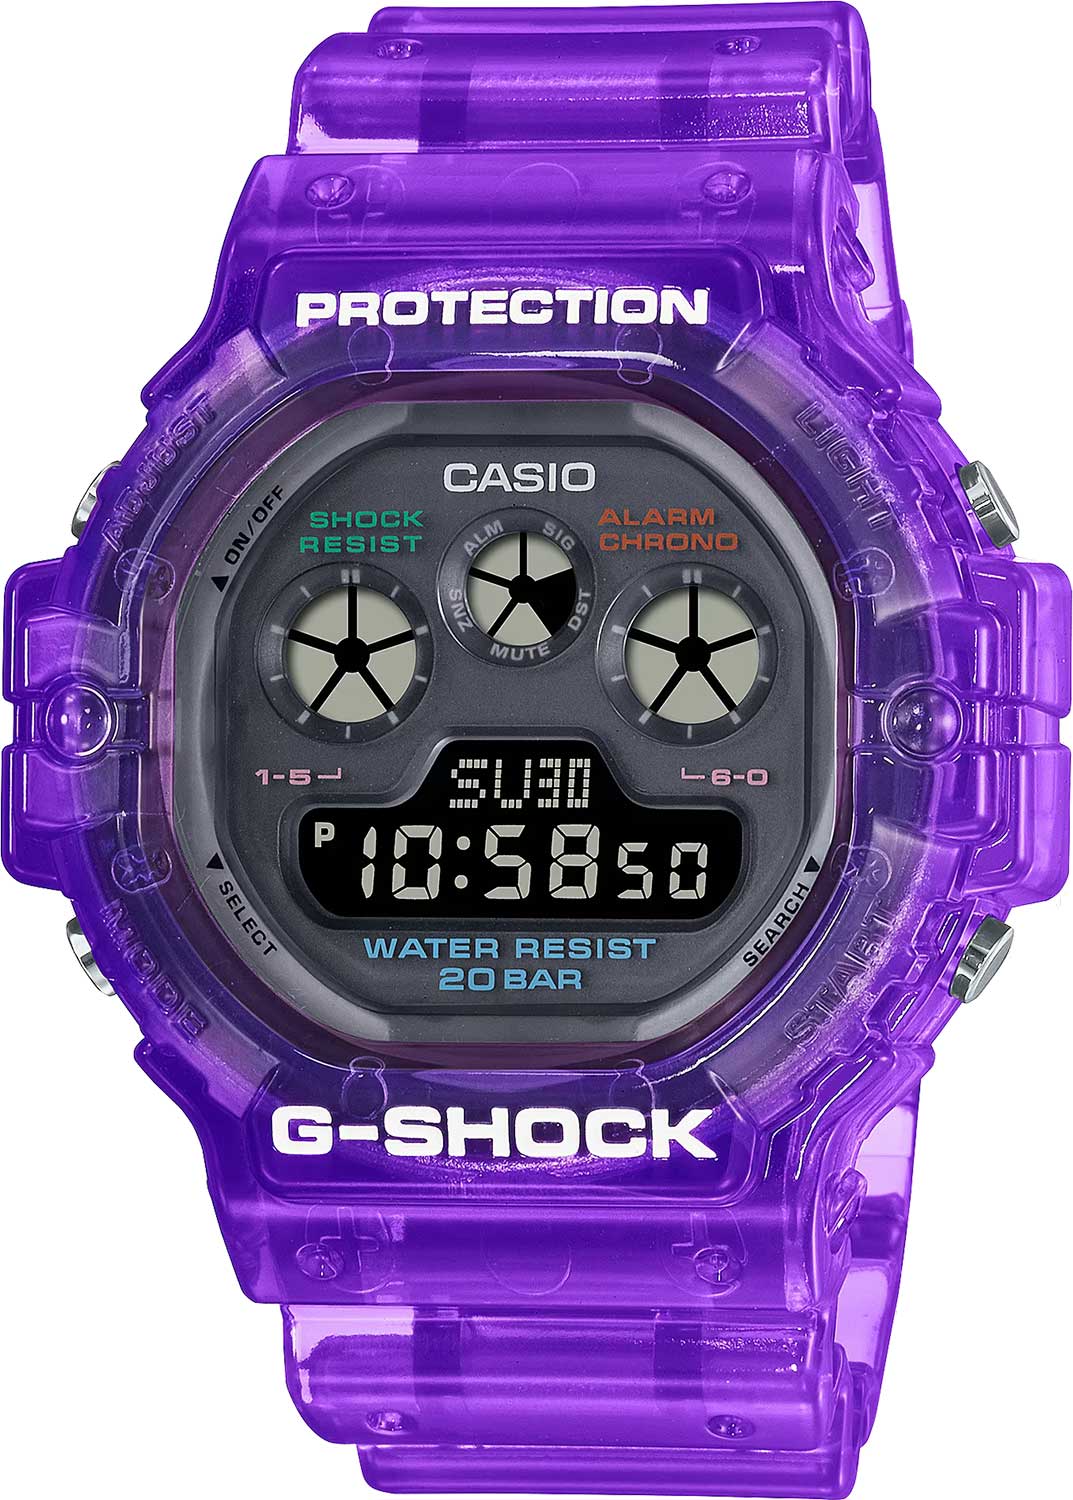    Casio G-SHOCK DW-5900JT-6  